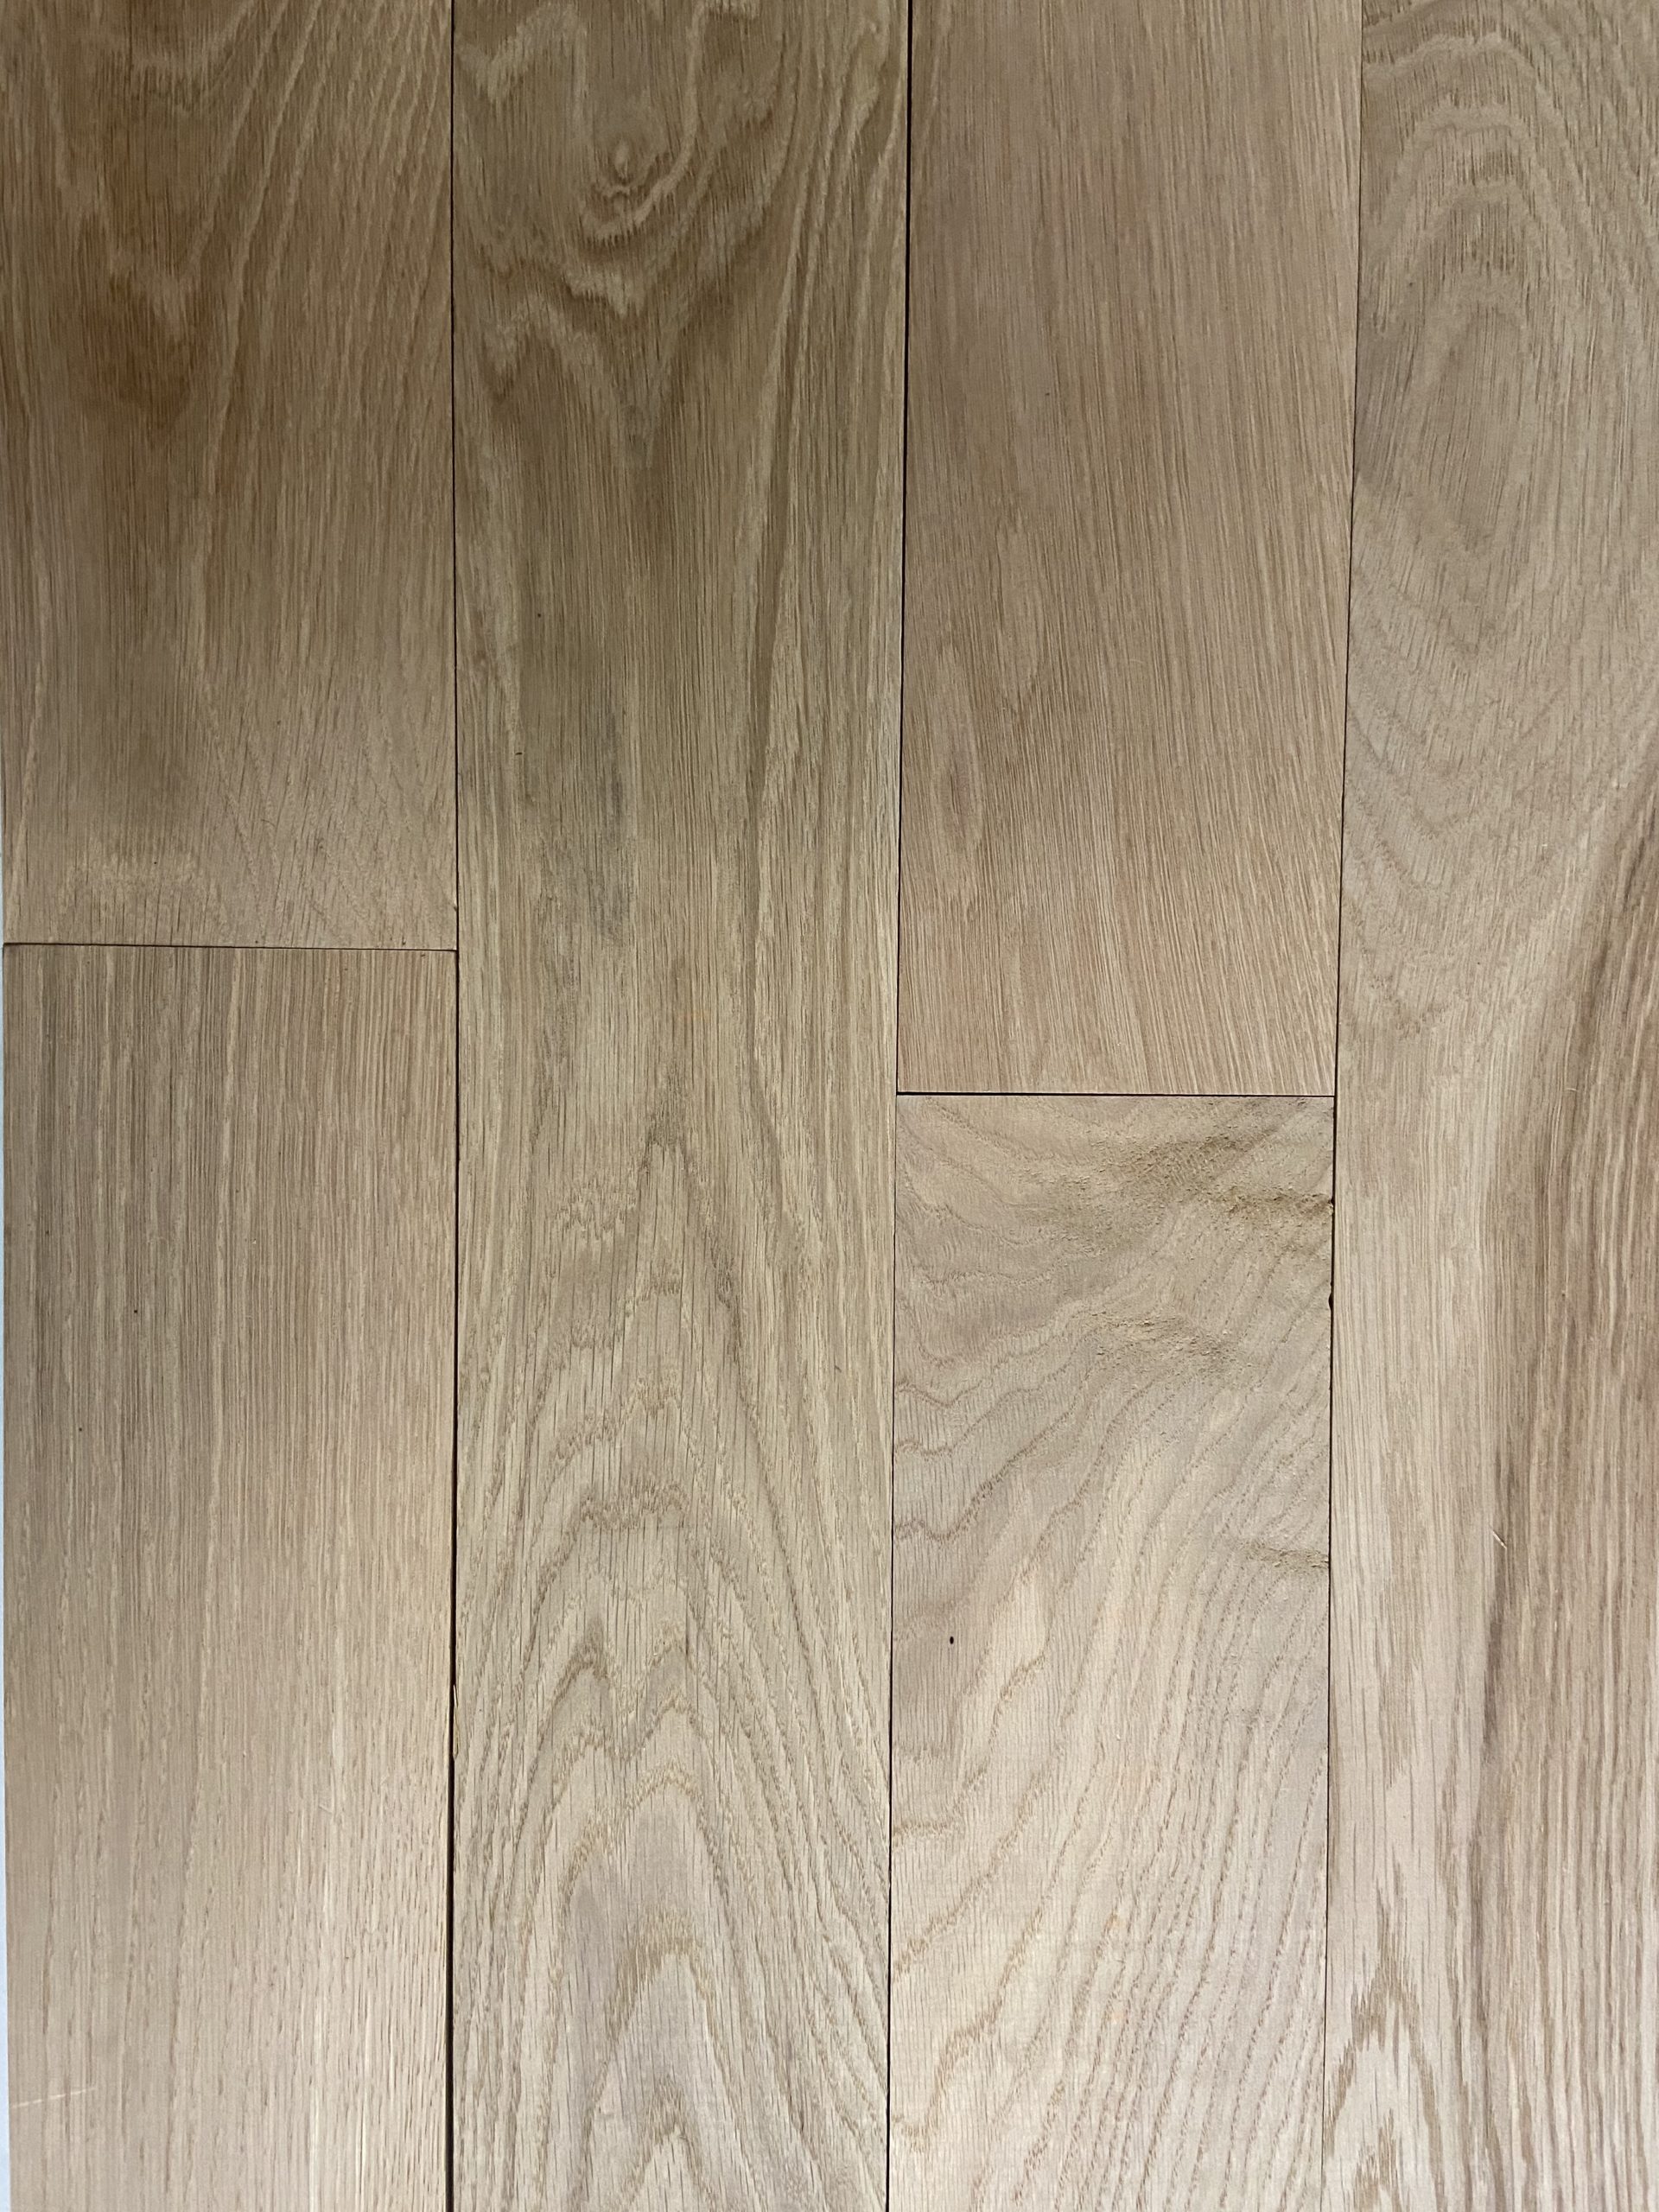 Unfinished White Oak Hardwood Flooring, Unfinished White Oak Engineered Hardwood Flooring